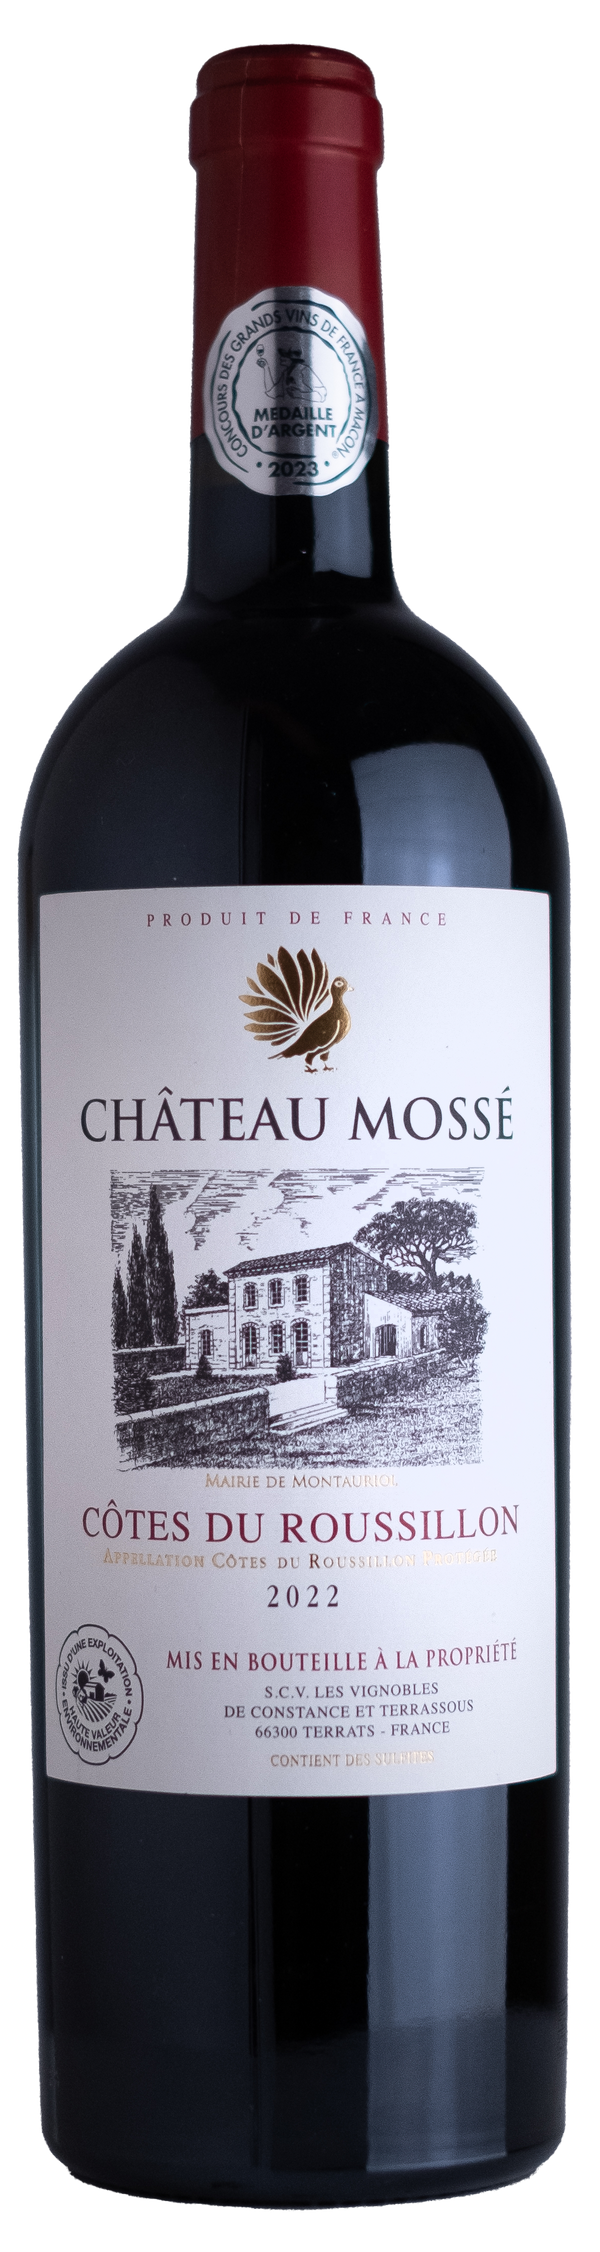 Chateau Mossé, AOC Côtes du Roussillon, Vignobles Terrassous 12x750ml - Just Wines 